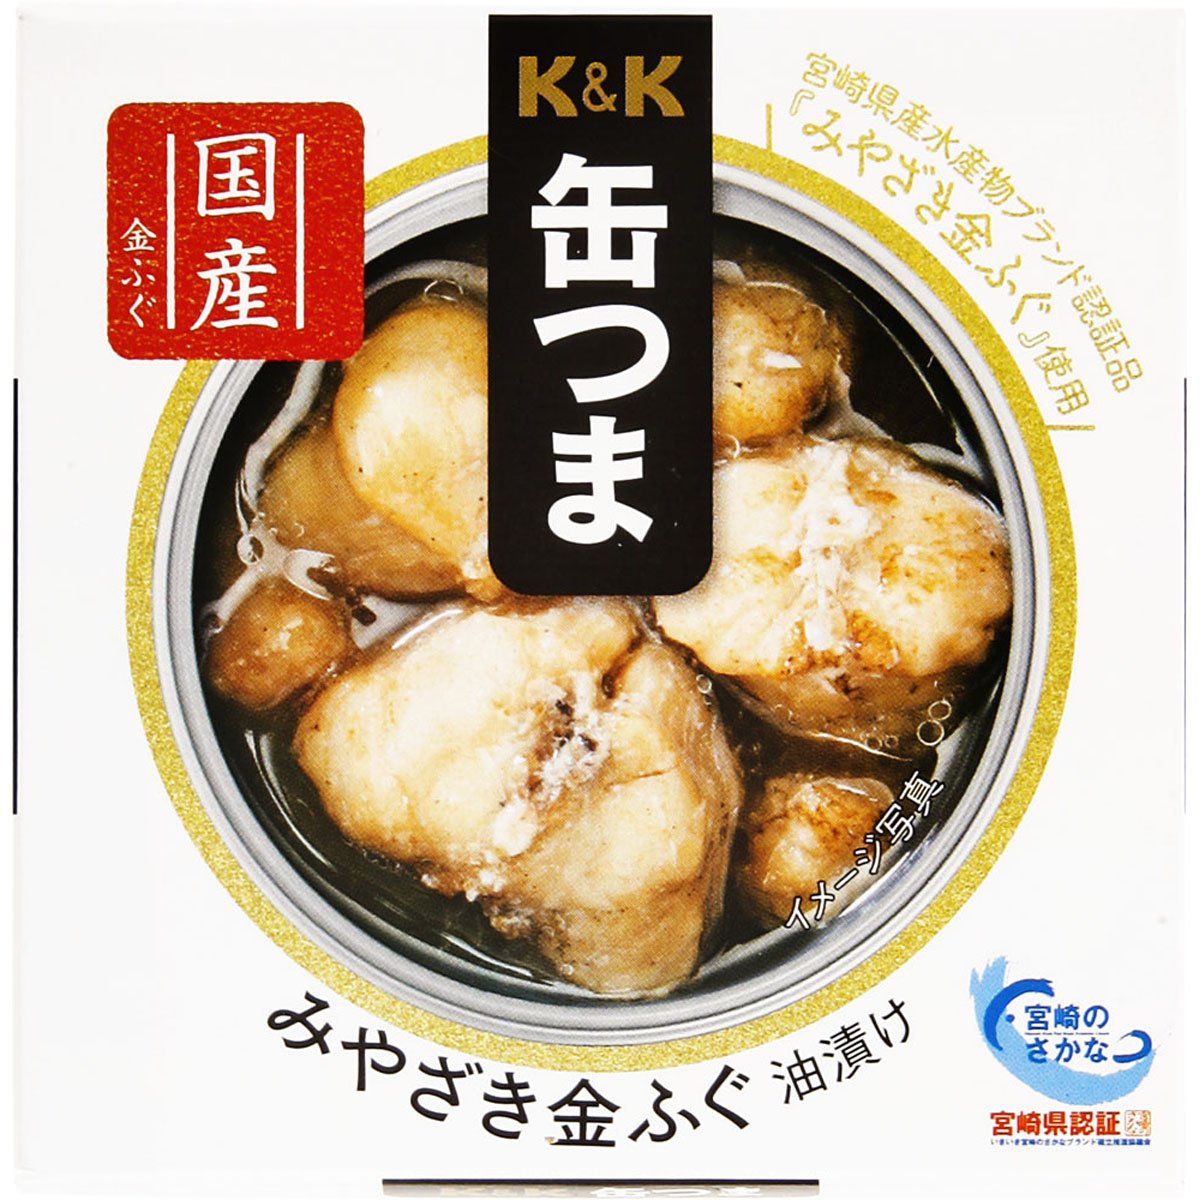 【セール品】K&K 缶つま みやざき金ふぐ 油漬け - ROJI日本橋 ONLINE STORE